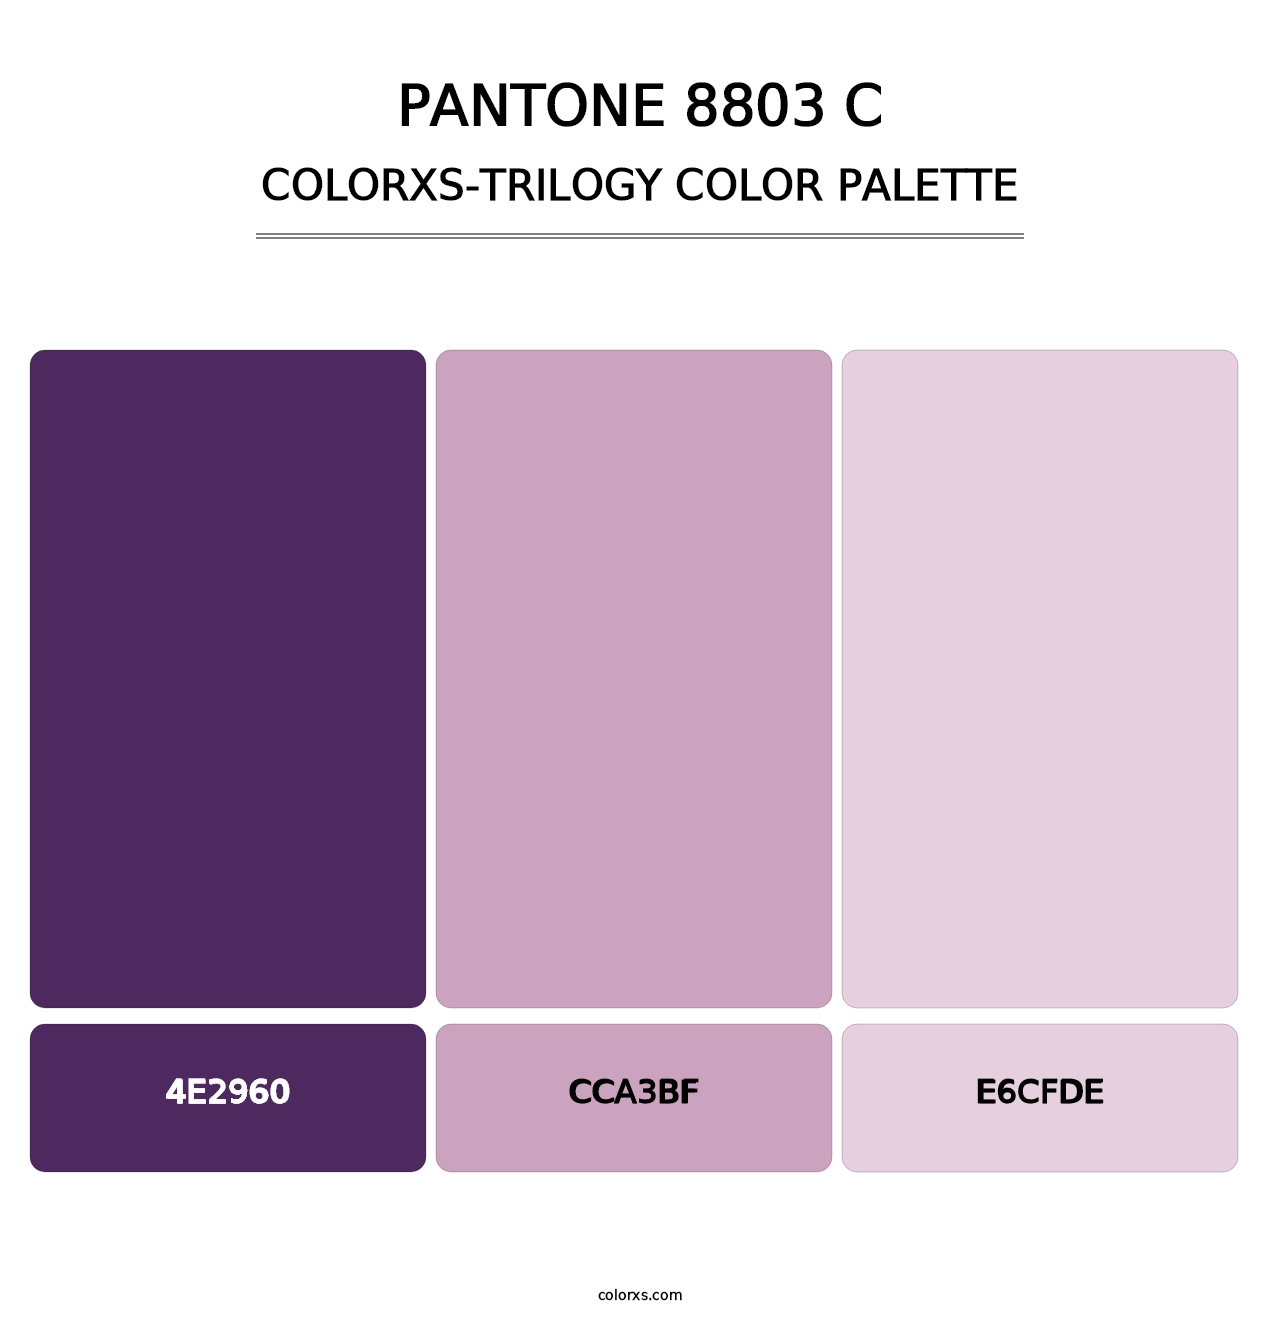 PANTONE 8803 C - Colorxs Trilogy Palette